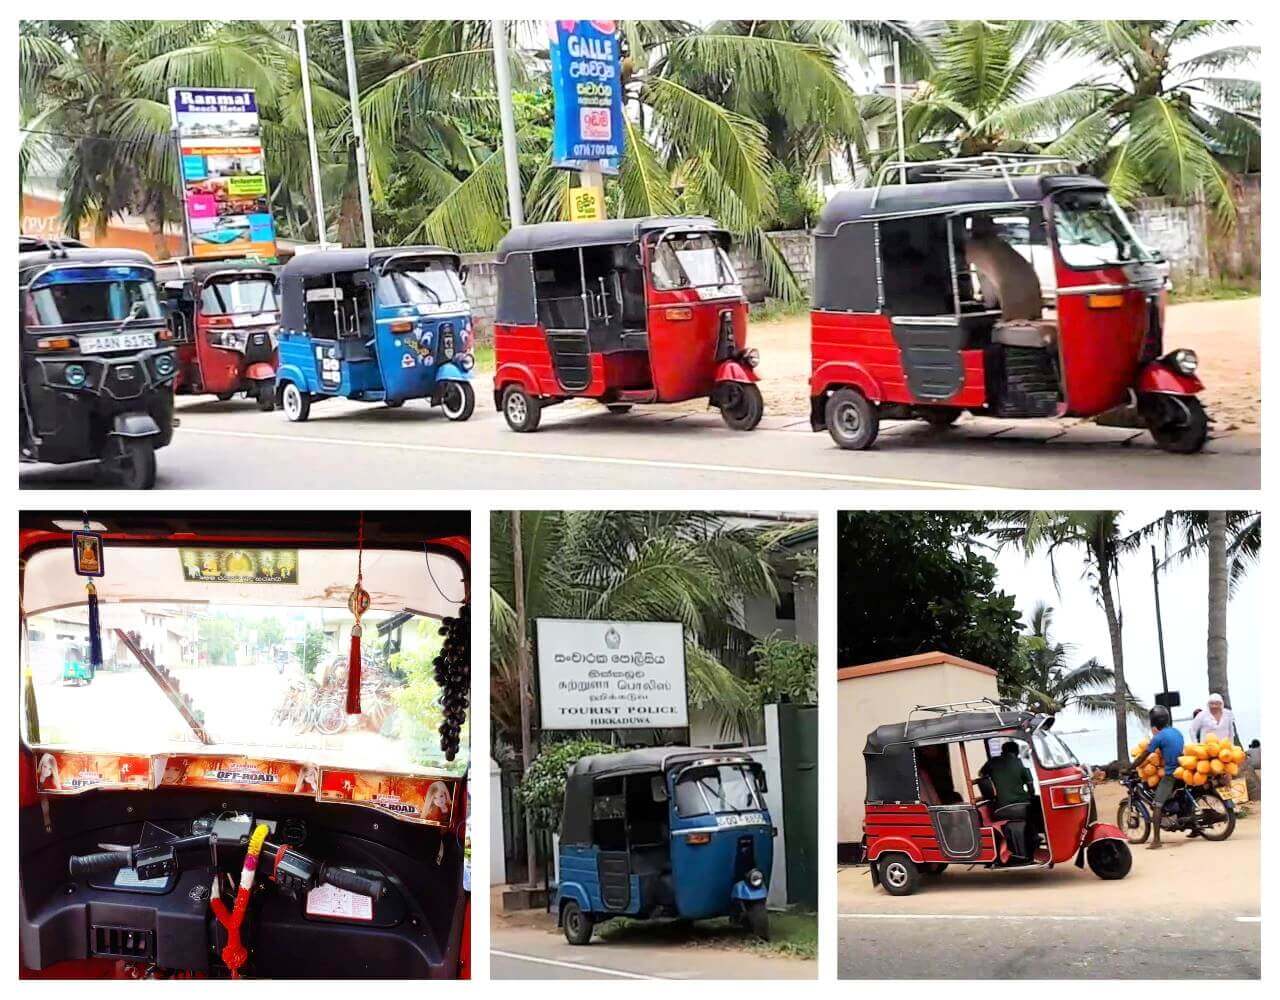 Tuk-tuks on the road, Sri Lanka